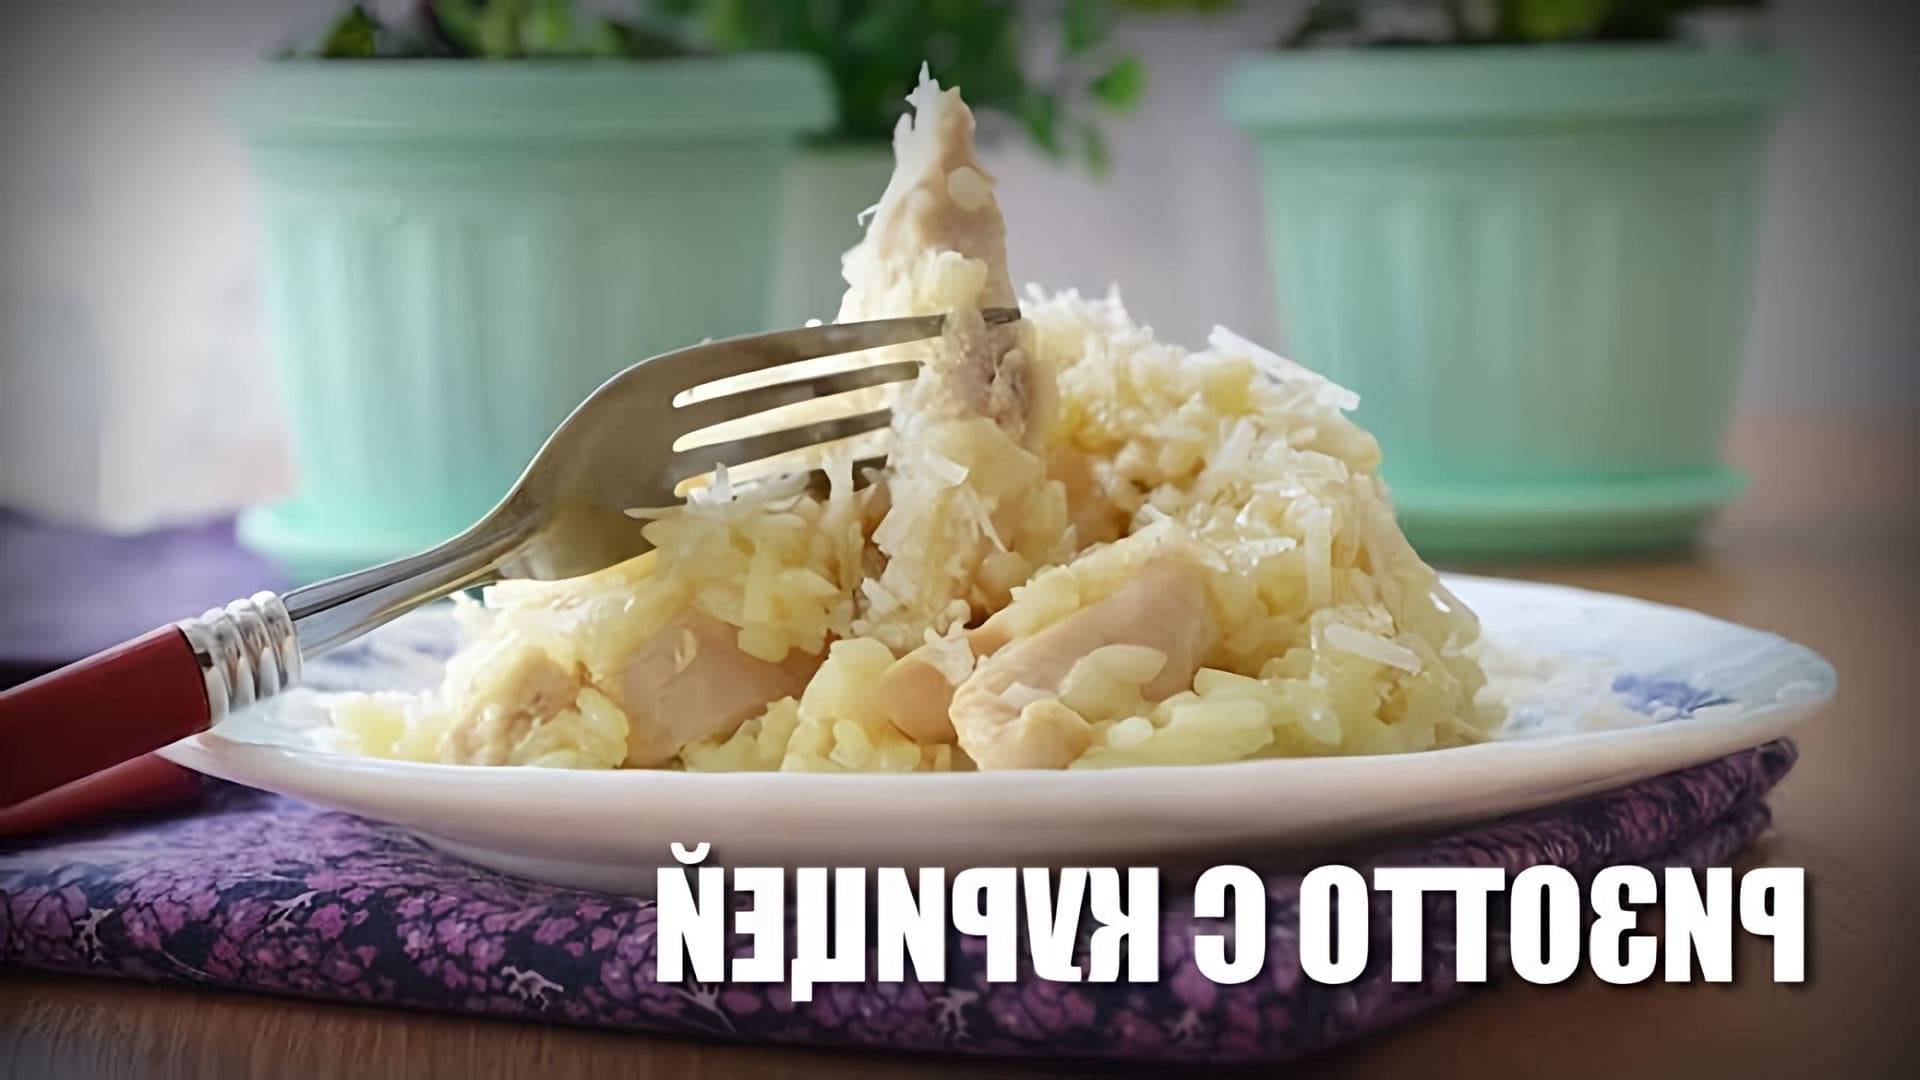 В данном видео представлен рецепт приготовления классического итальянского блюда - ризотто с курицей